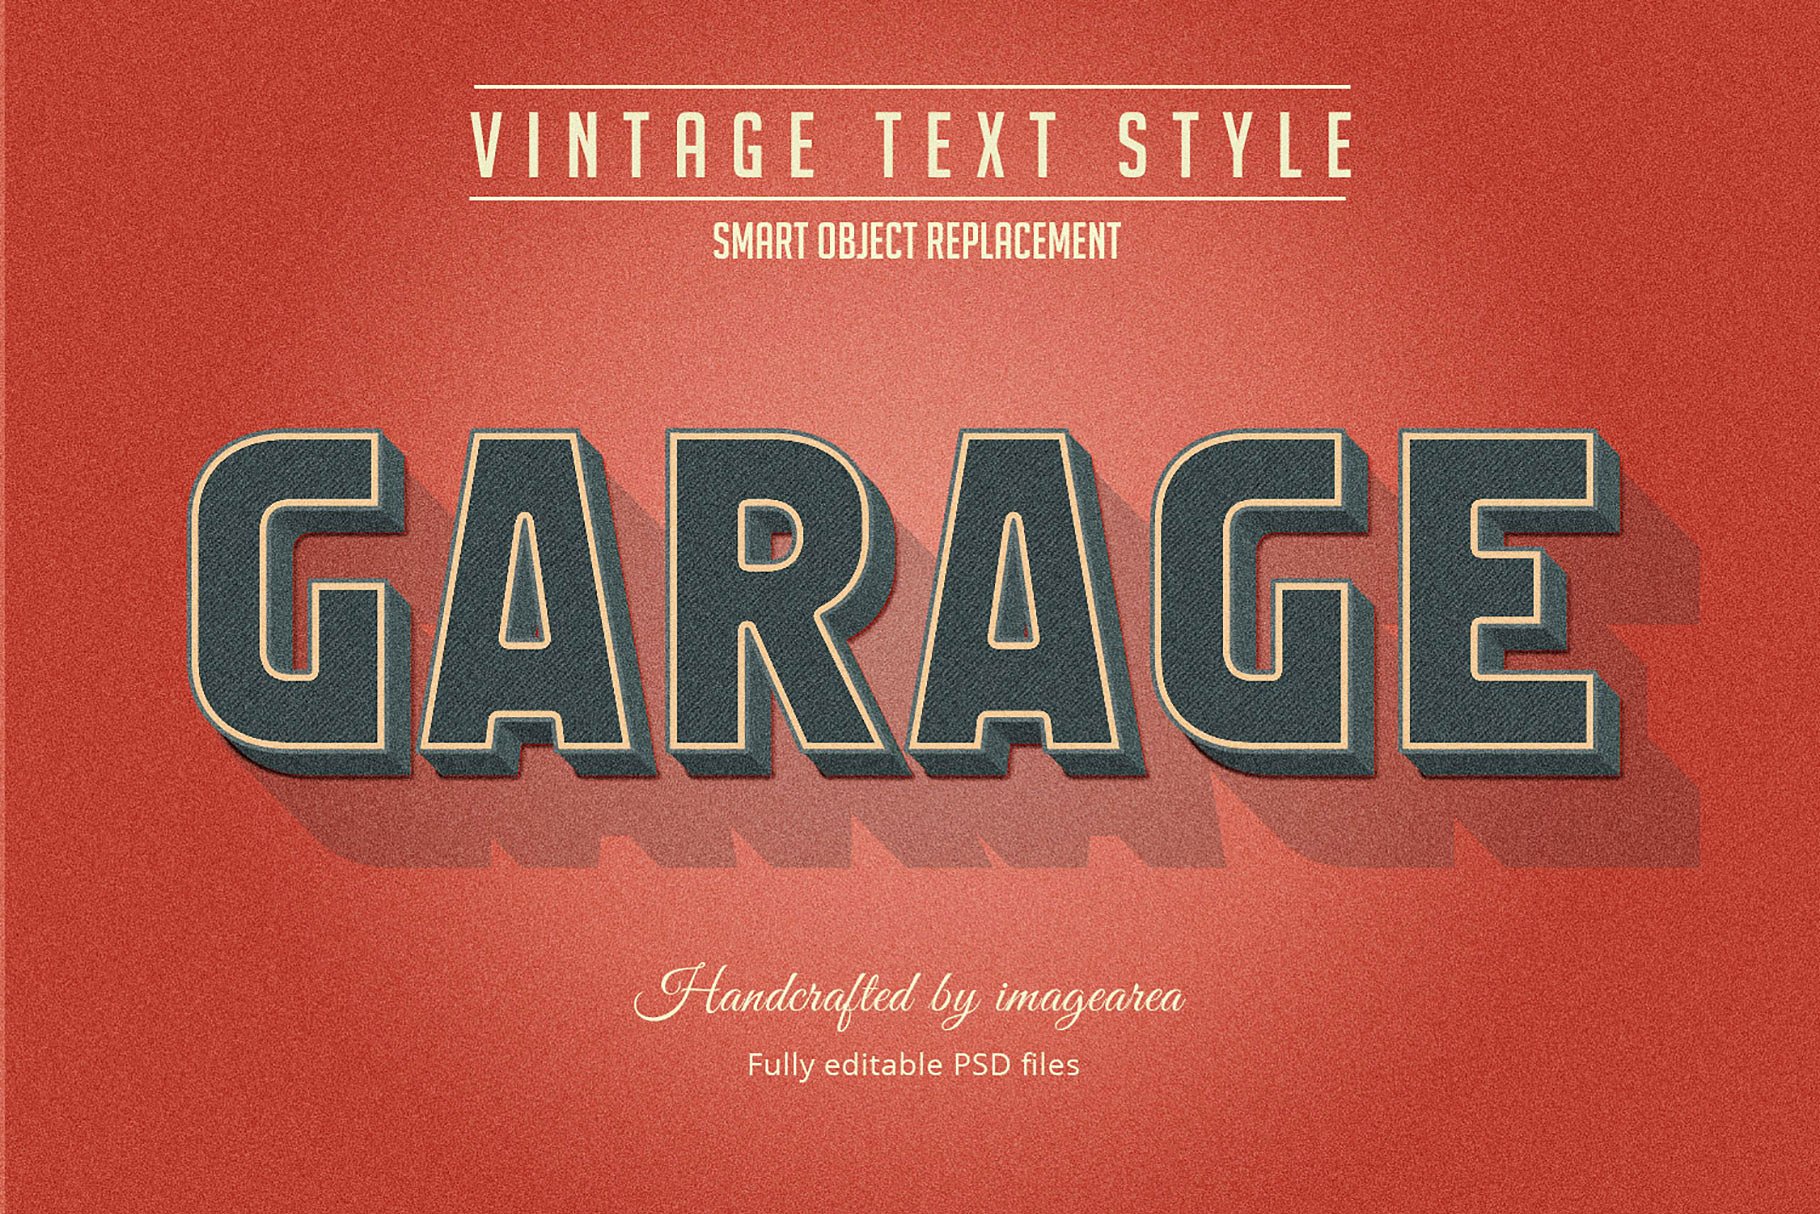 复古条纹风格文本图层样式 Vintage / Retro Text Styles插图(10)